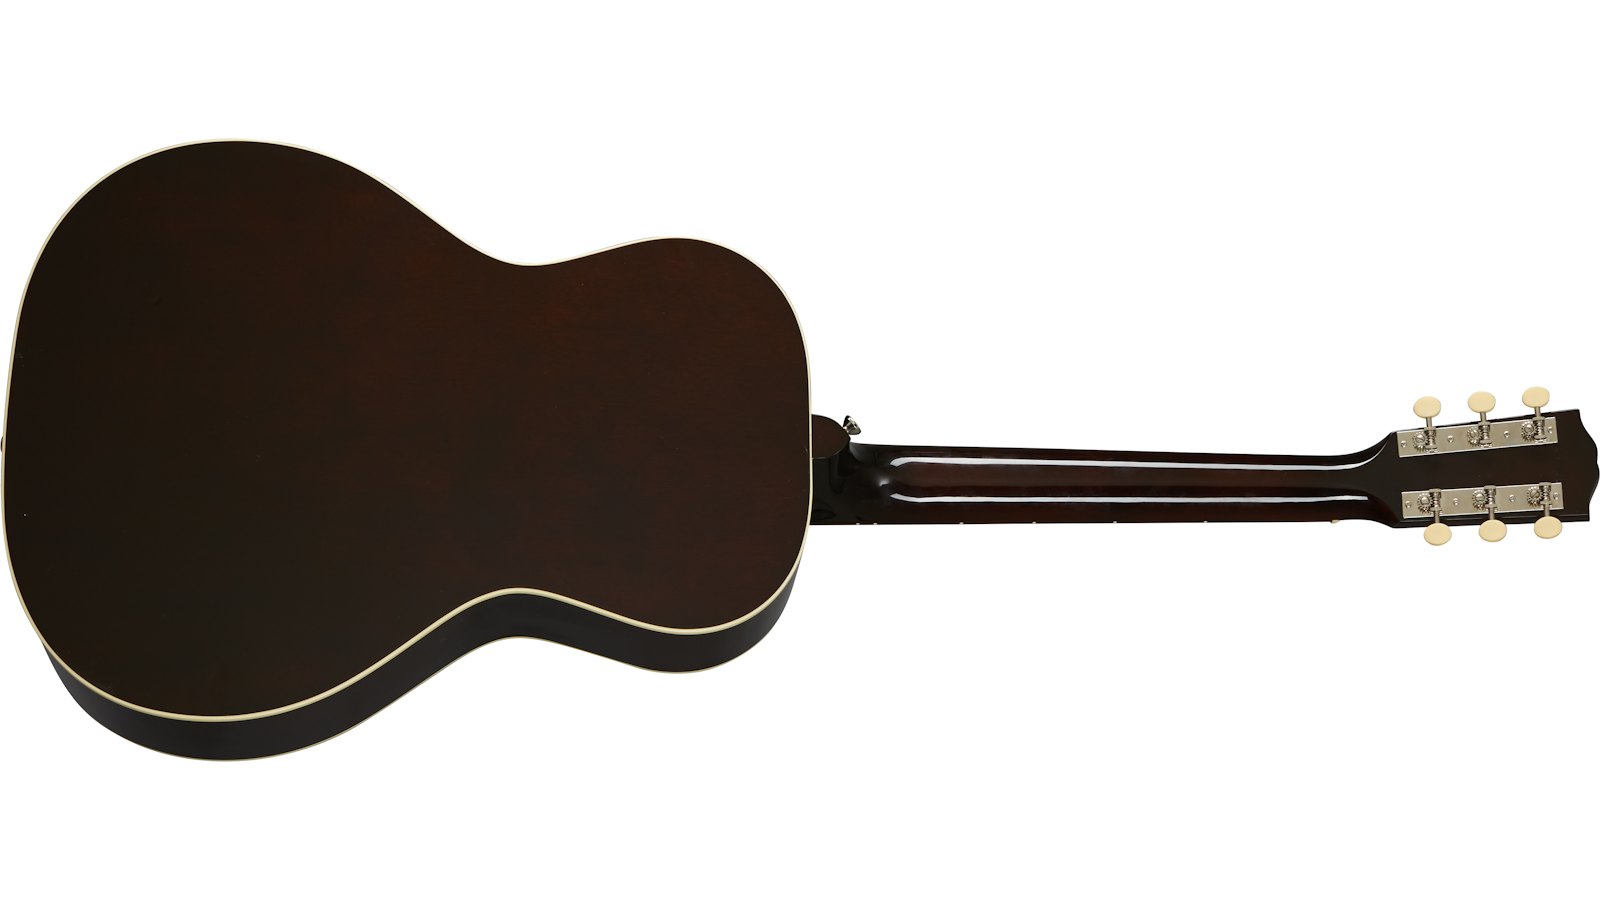 Gibson L-00 Original 2020 Parlor Epicea Acajou Rw - Vintage Sunburst - Guitare Electro Acoustique - Variation 1